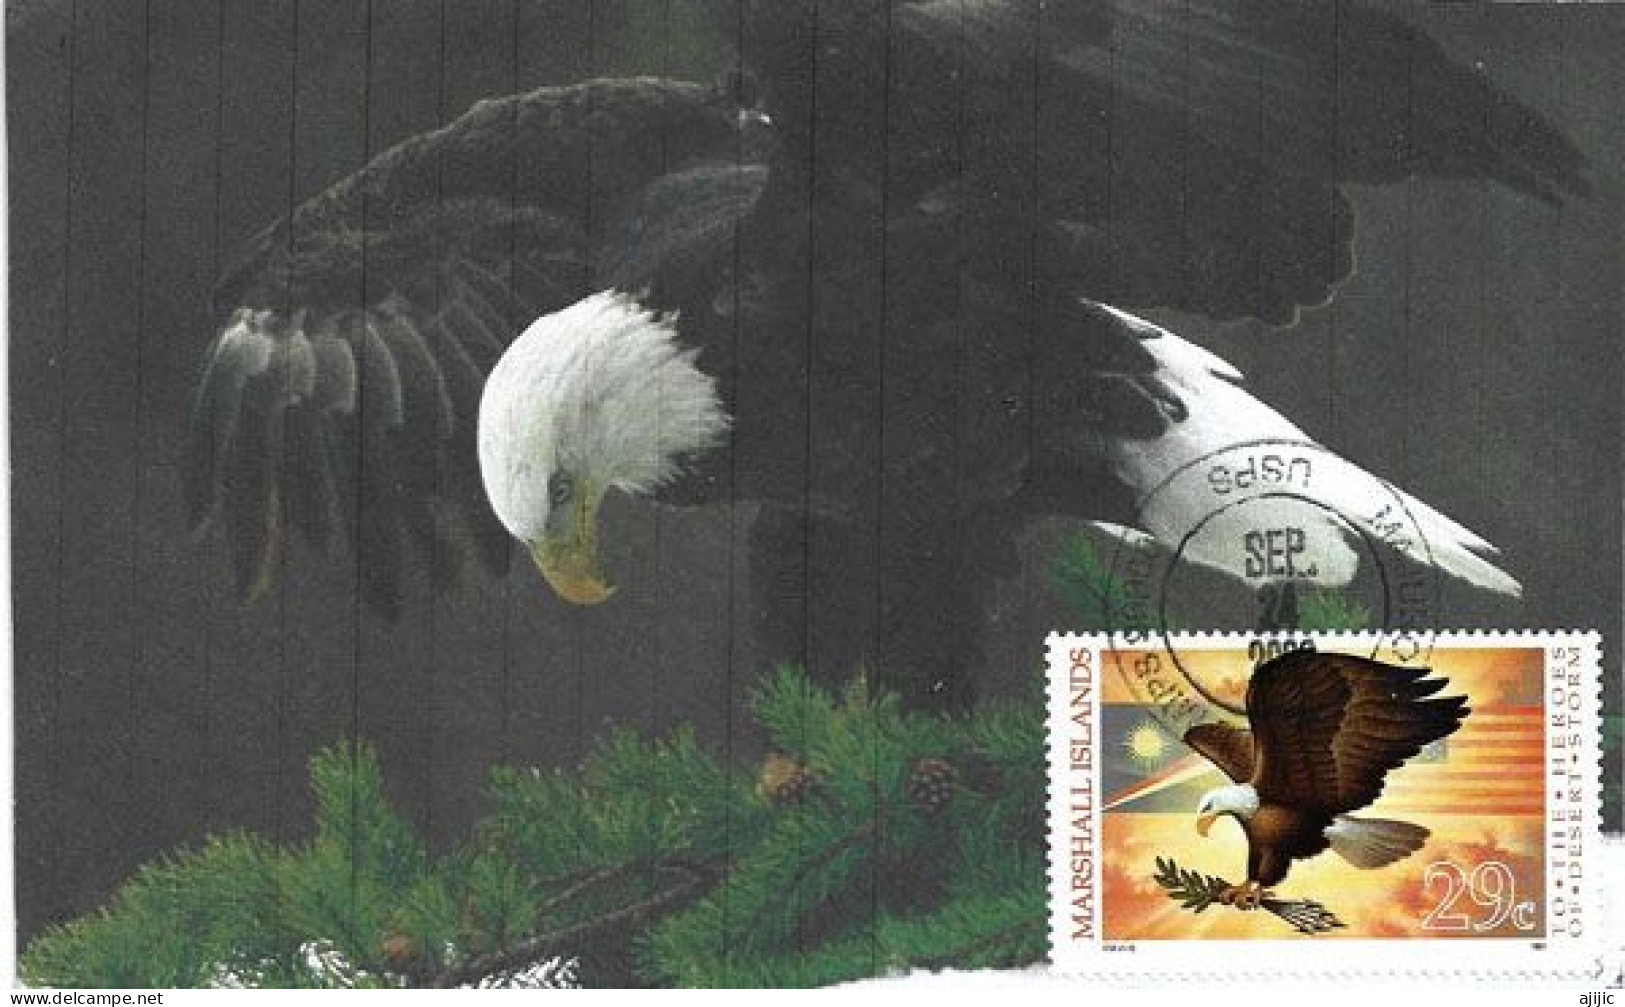 MARSHALL ISLAND: American Eagle (Bald Eagle)   MAXI-CARD From Majuro Marshall Islands - Marshall Islands